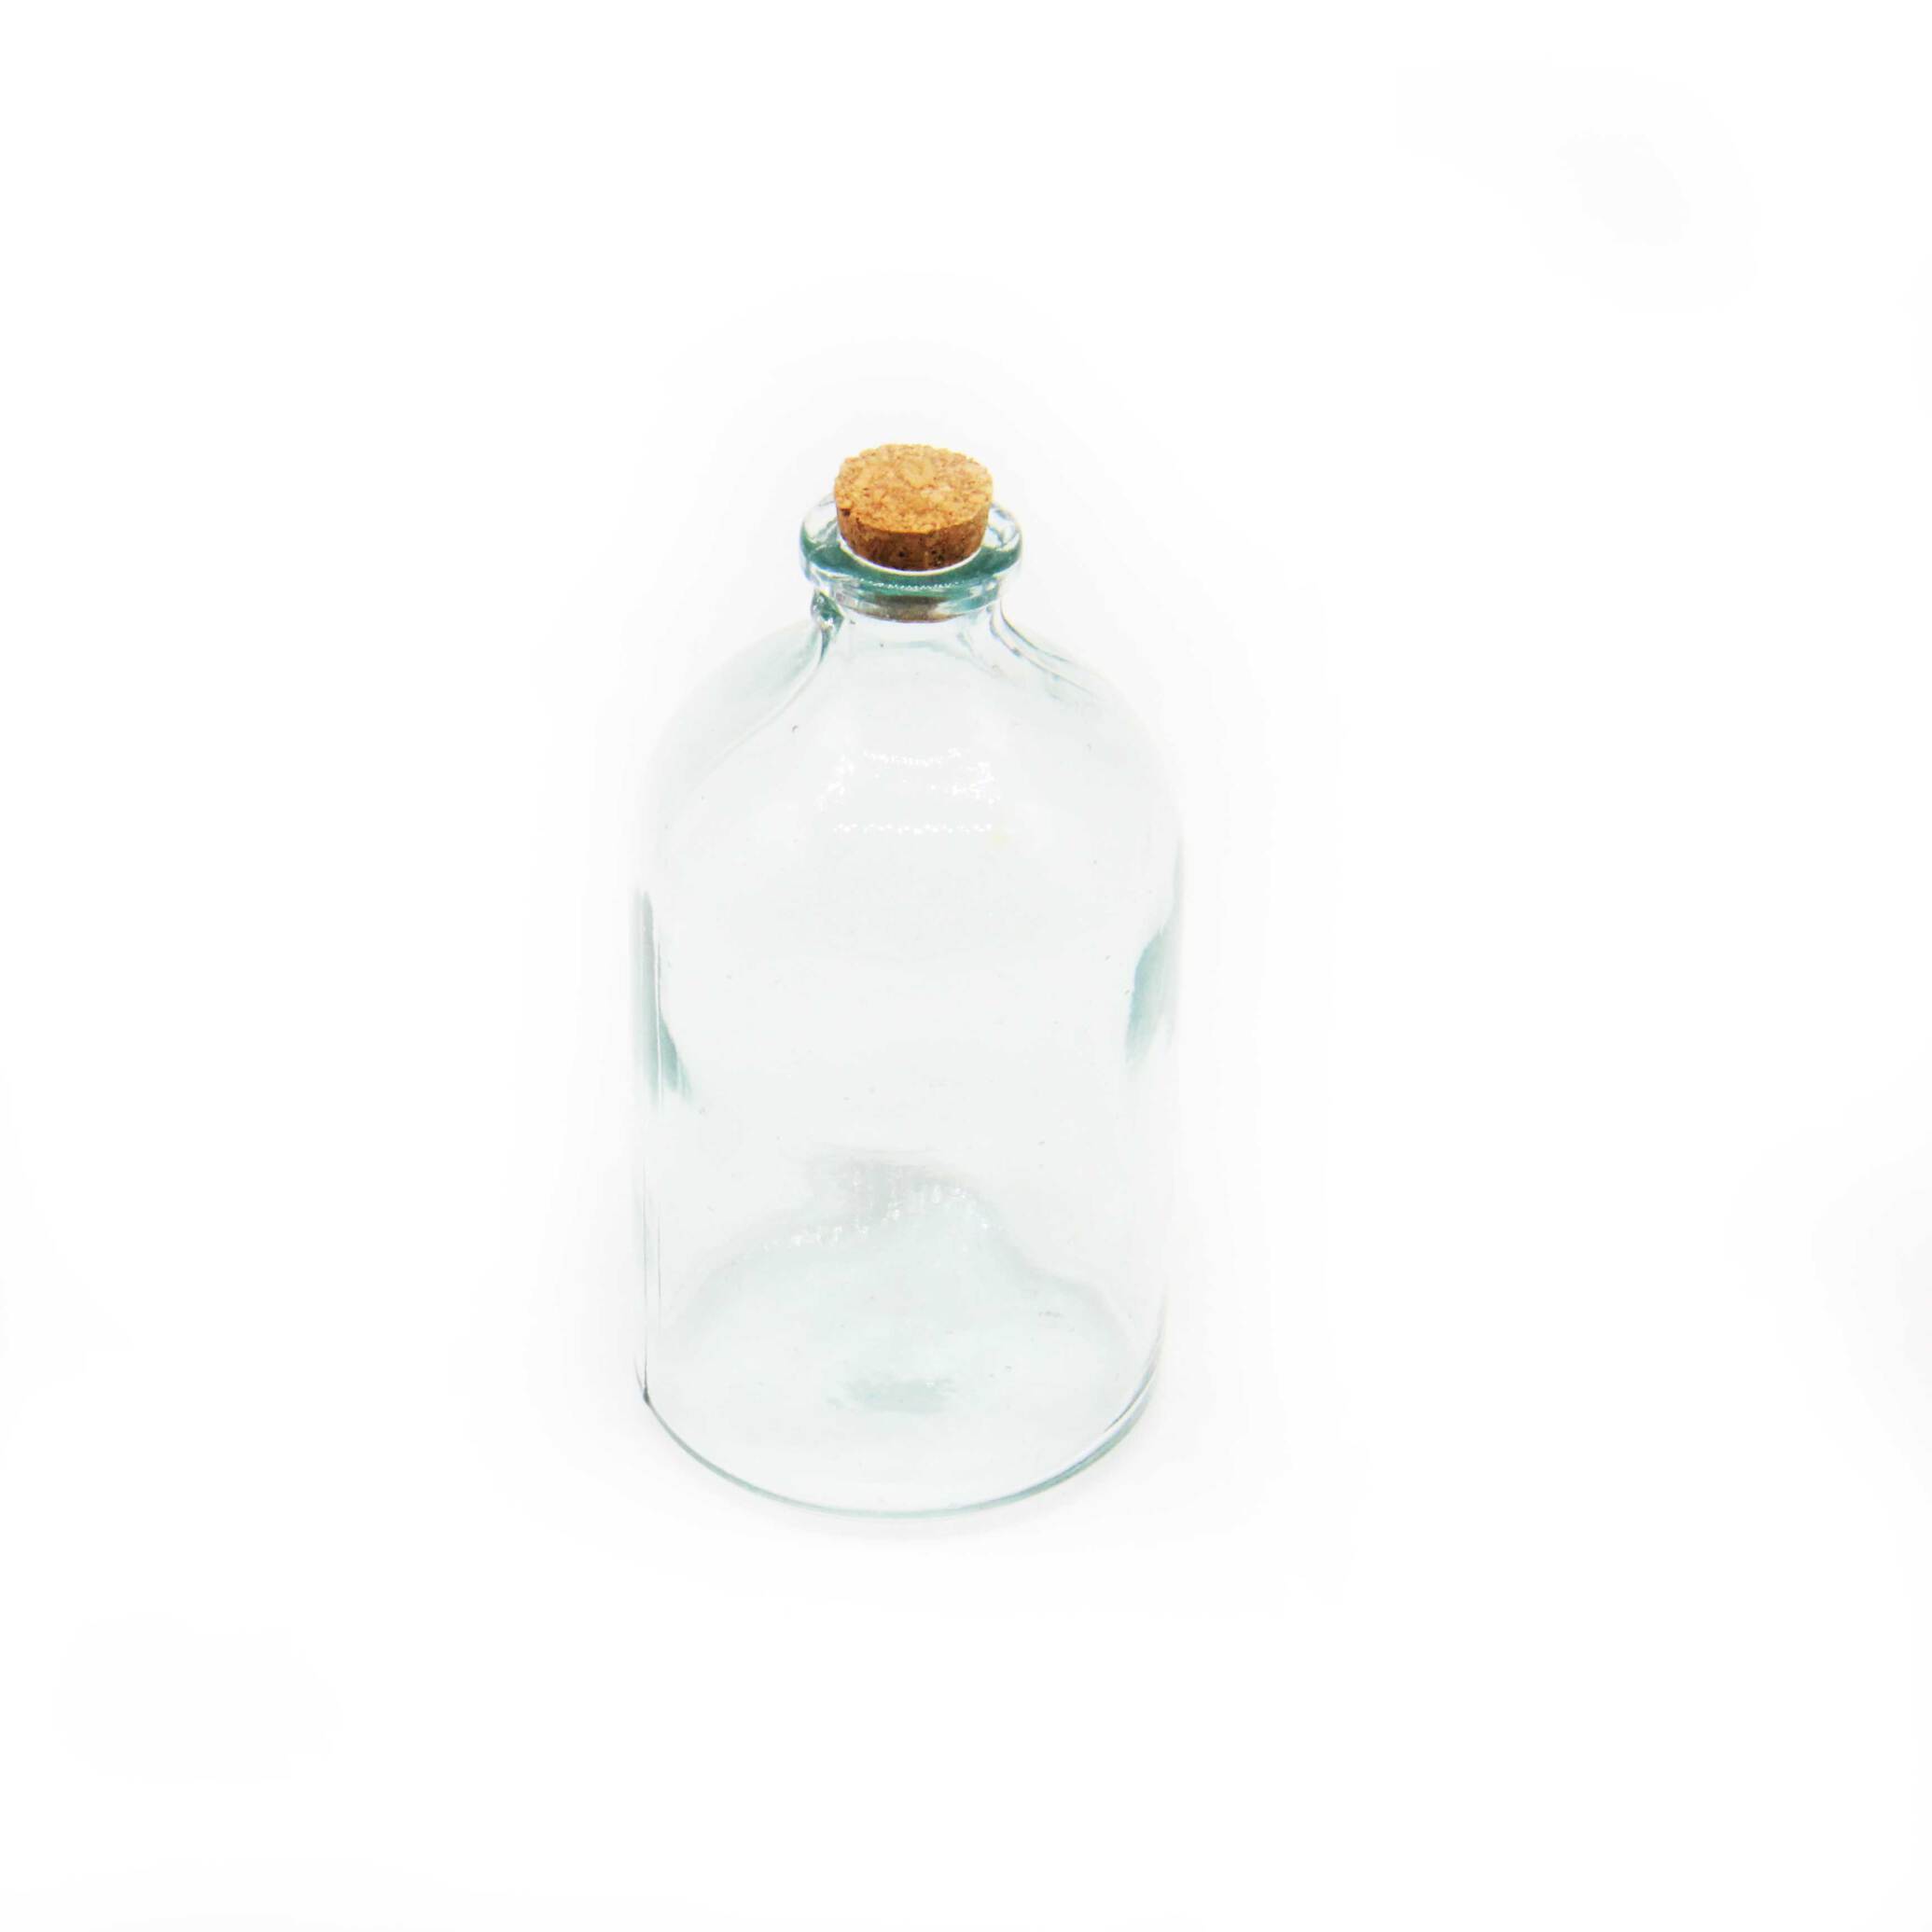  بطری شیشه ای با چوب پنبه  مناسب پودر و هدیه های کوچک  جنس : شیشه  جنس درب چوب پنبه  